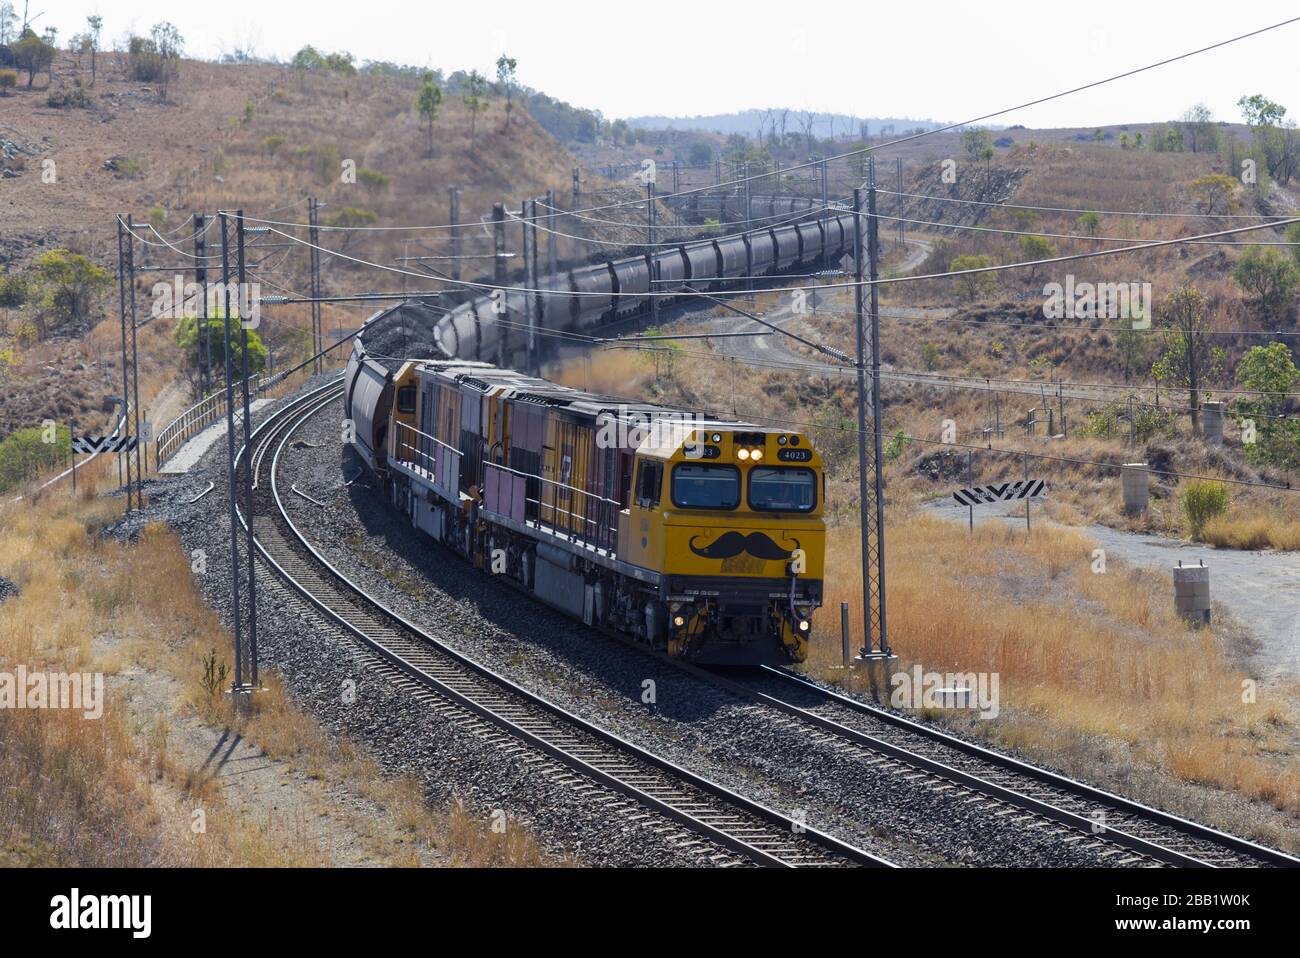 Einige der längsten und schwersten Güterzüge der Welt werden gefunden, die Kohle von den Bergwerken im Landesinneren zu den Küstenhäfen von Qld Australien transportieren Stockfoto